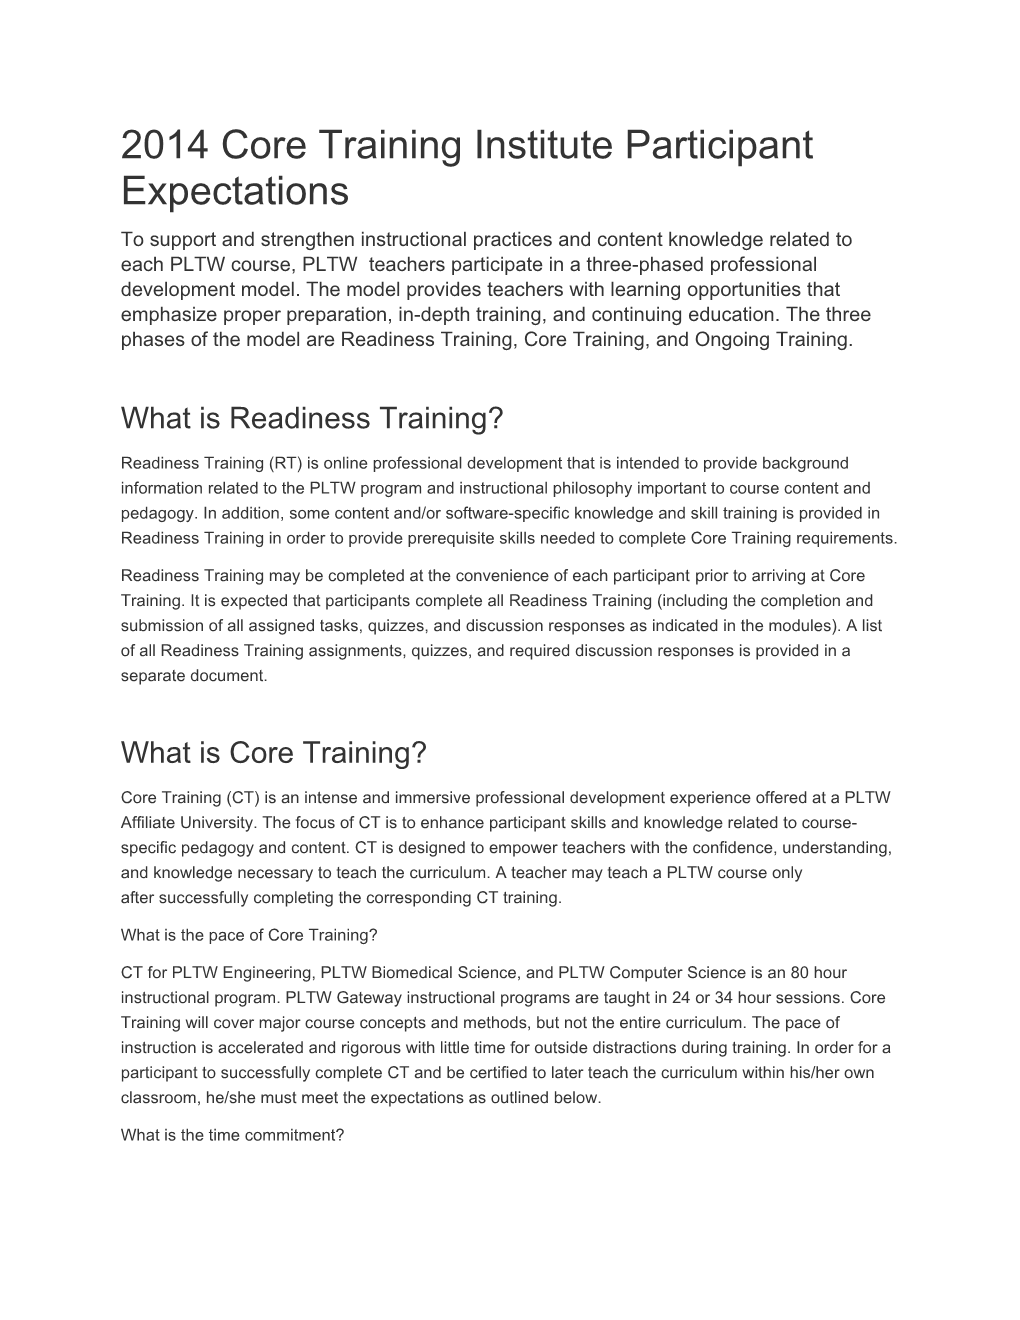 2014 Core Training Institute Participant Expectations